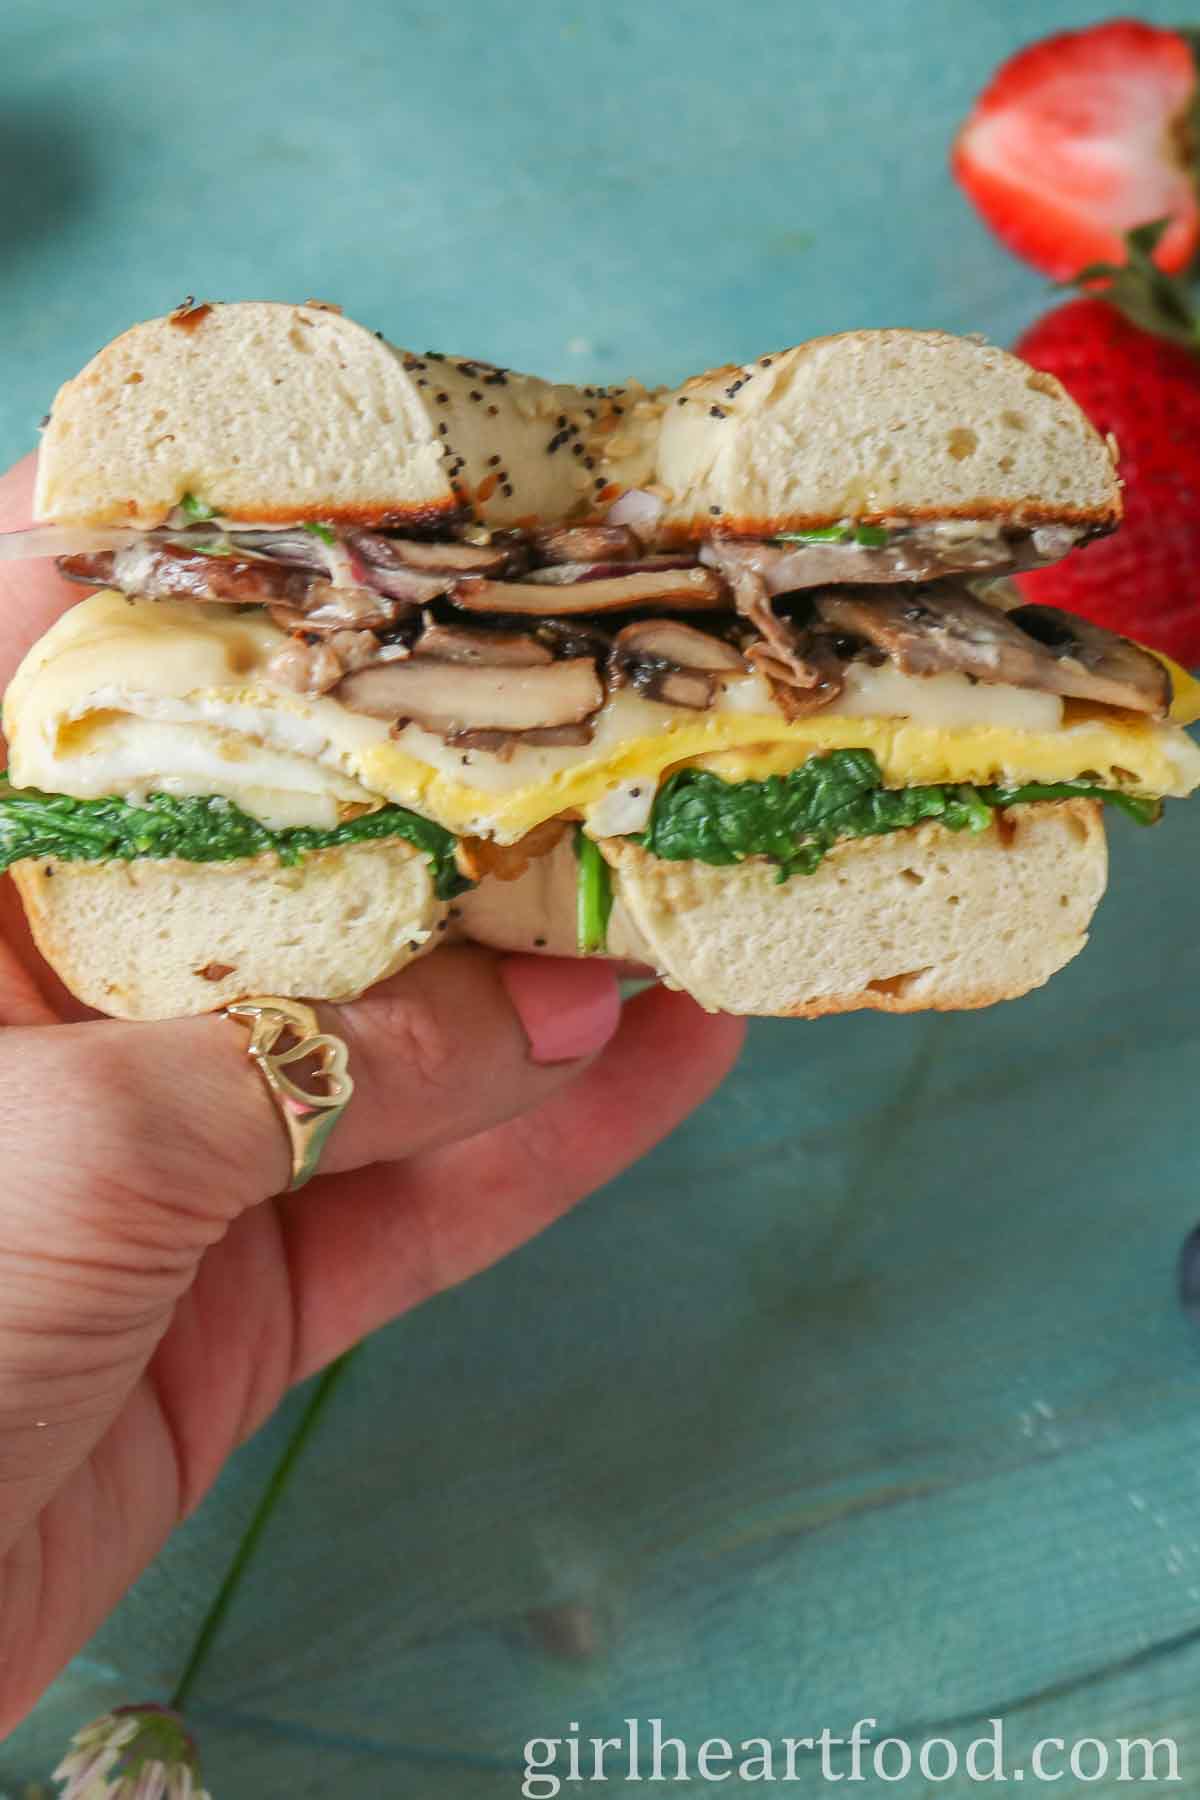 Hand holding half of a bagel breakfast sandwich.